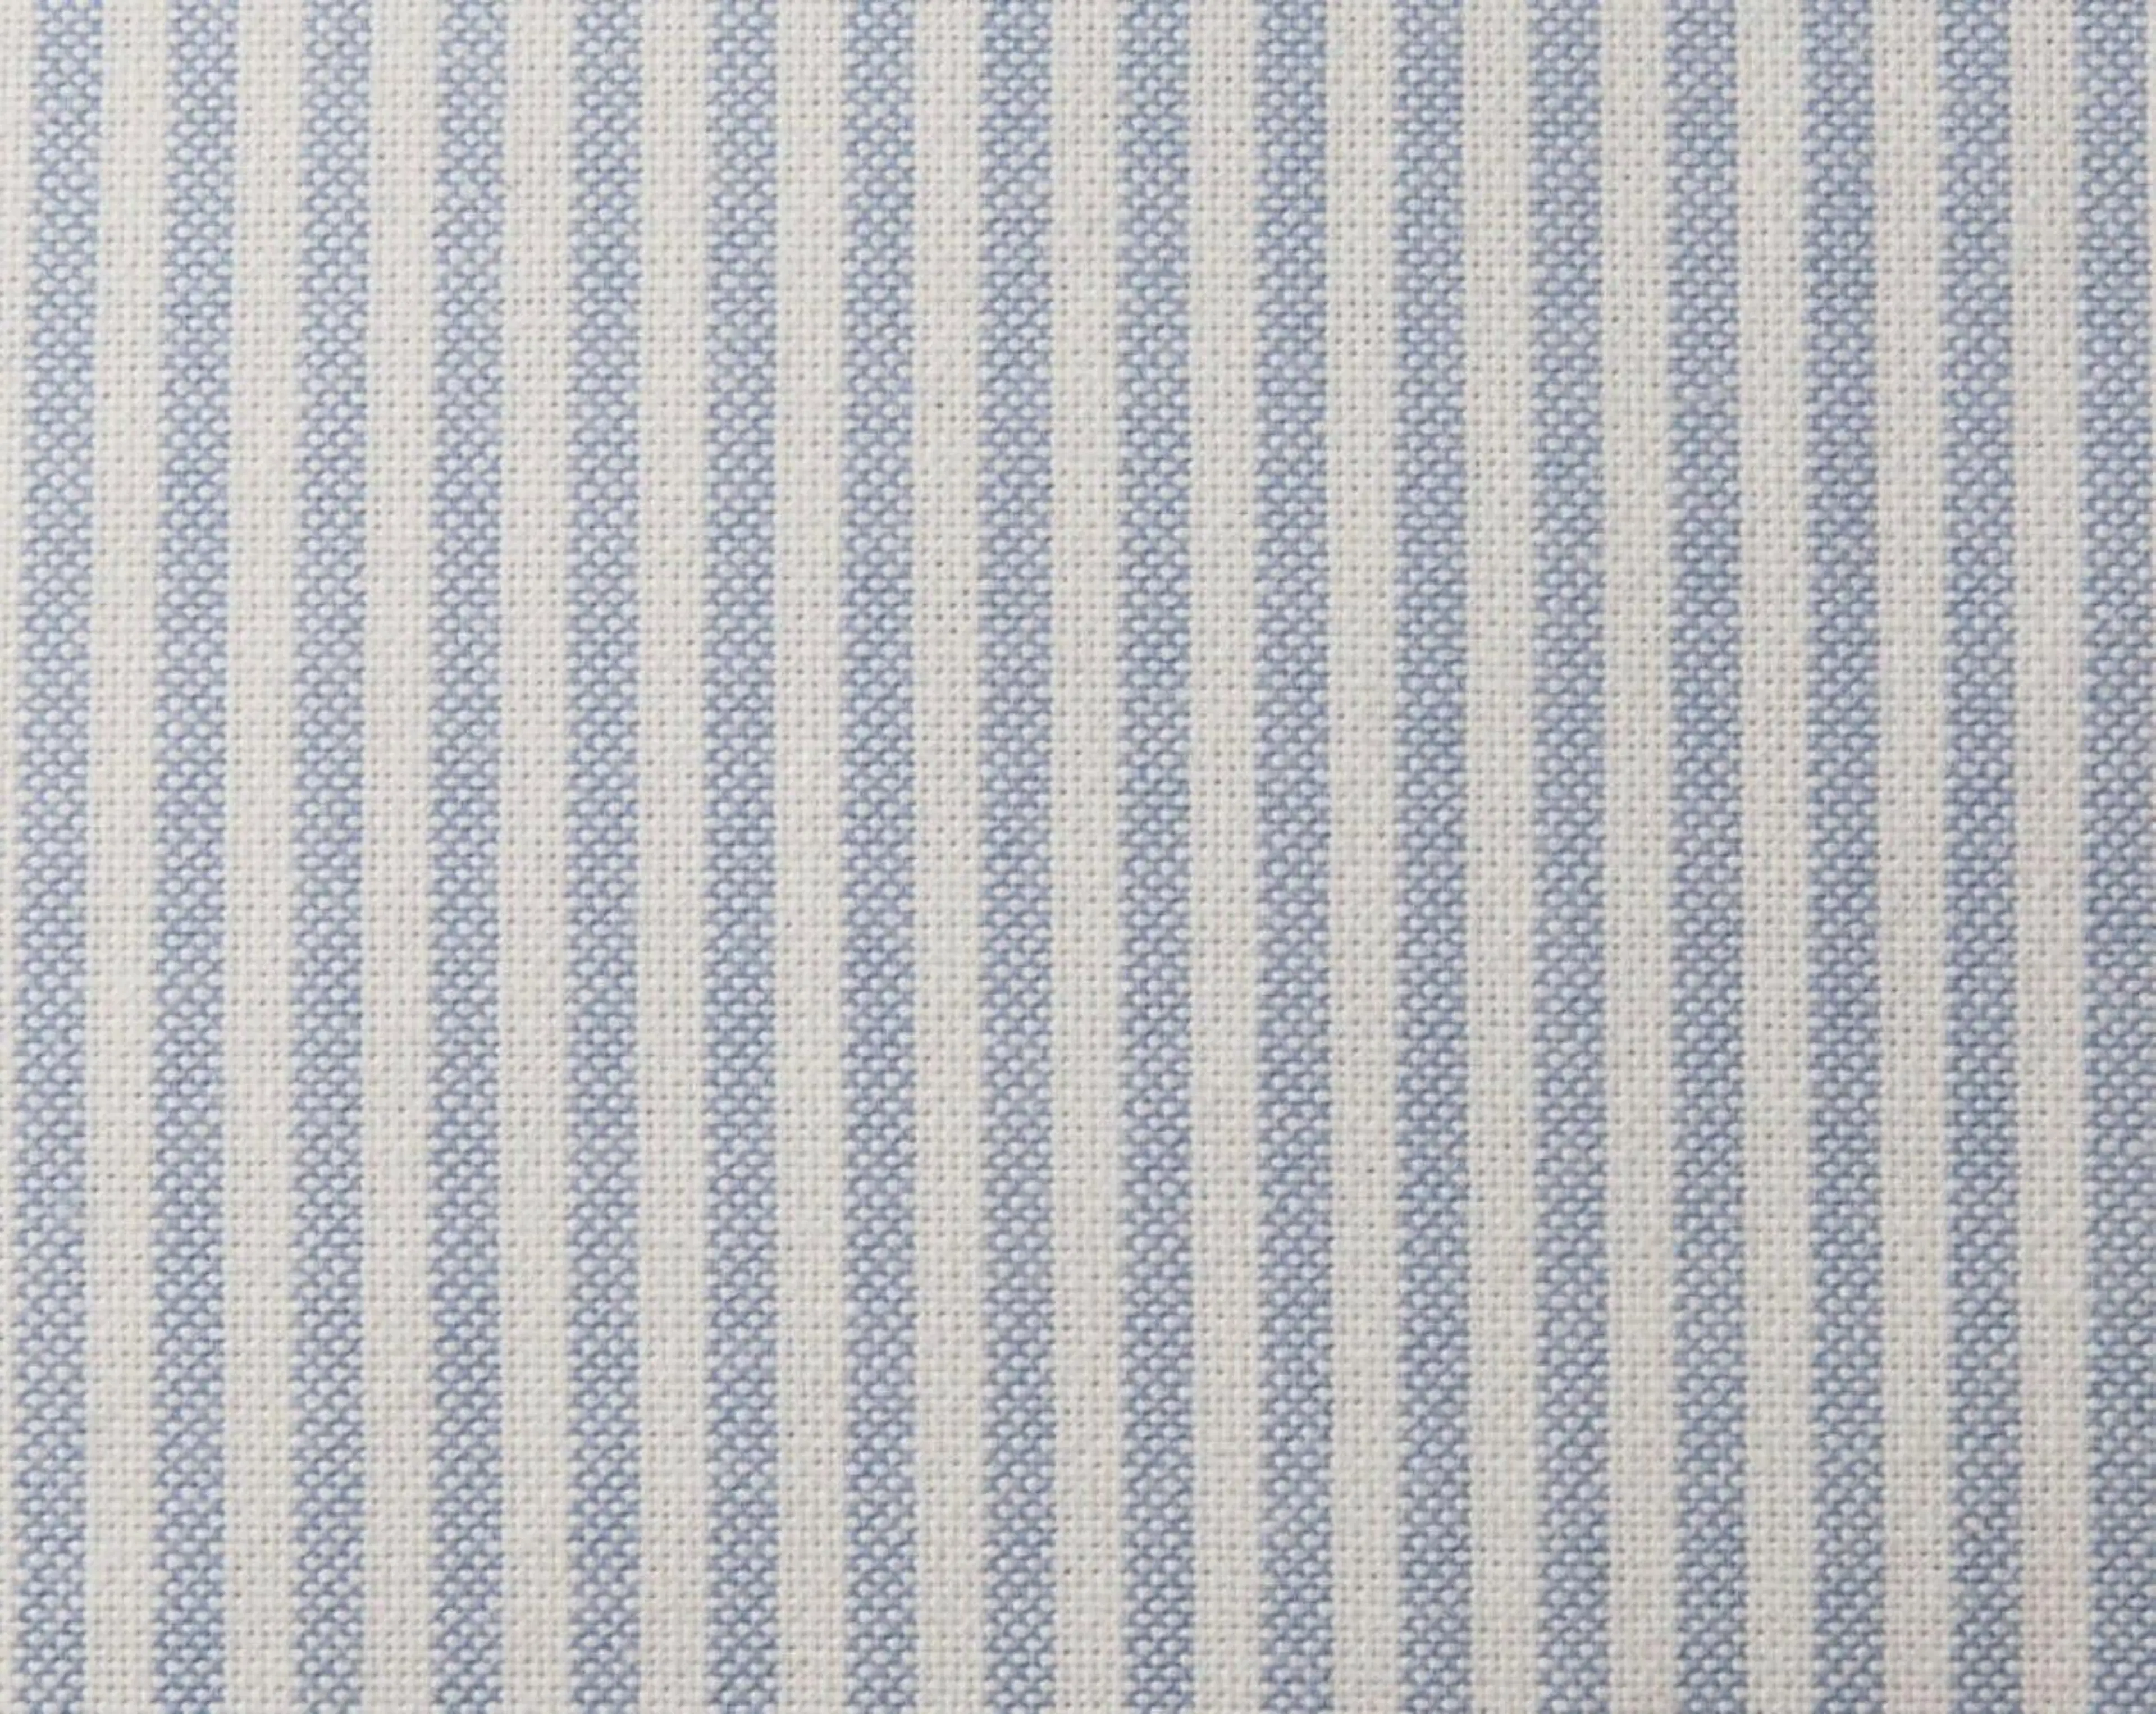 Lexington Pin Point tyynyliina sininen/valkoinen 50x60cm